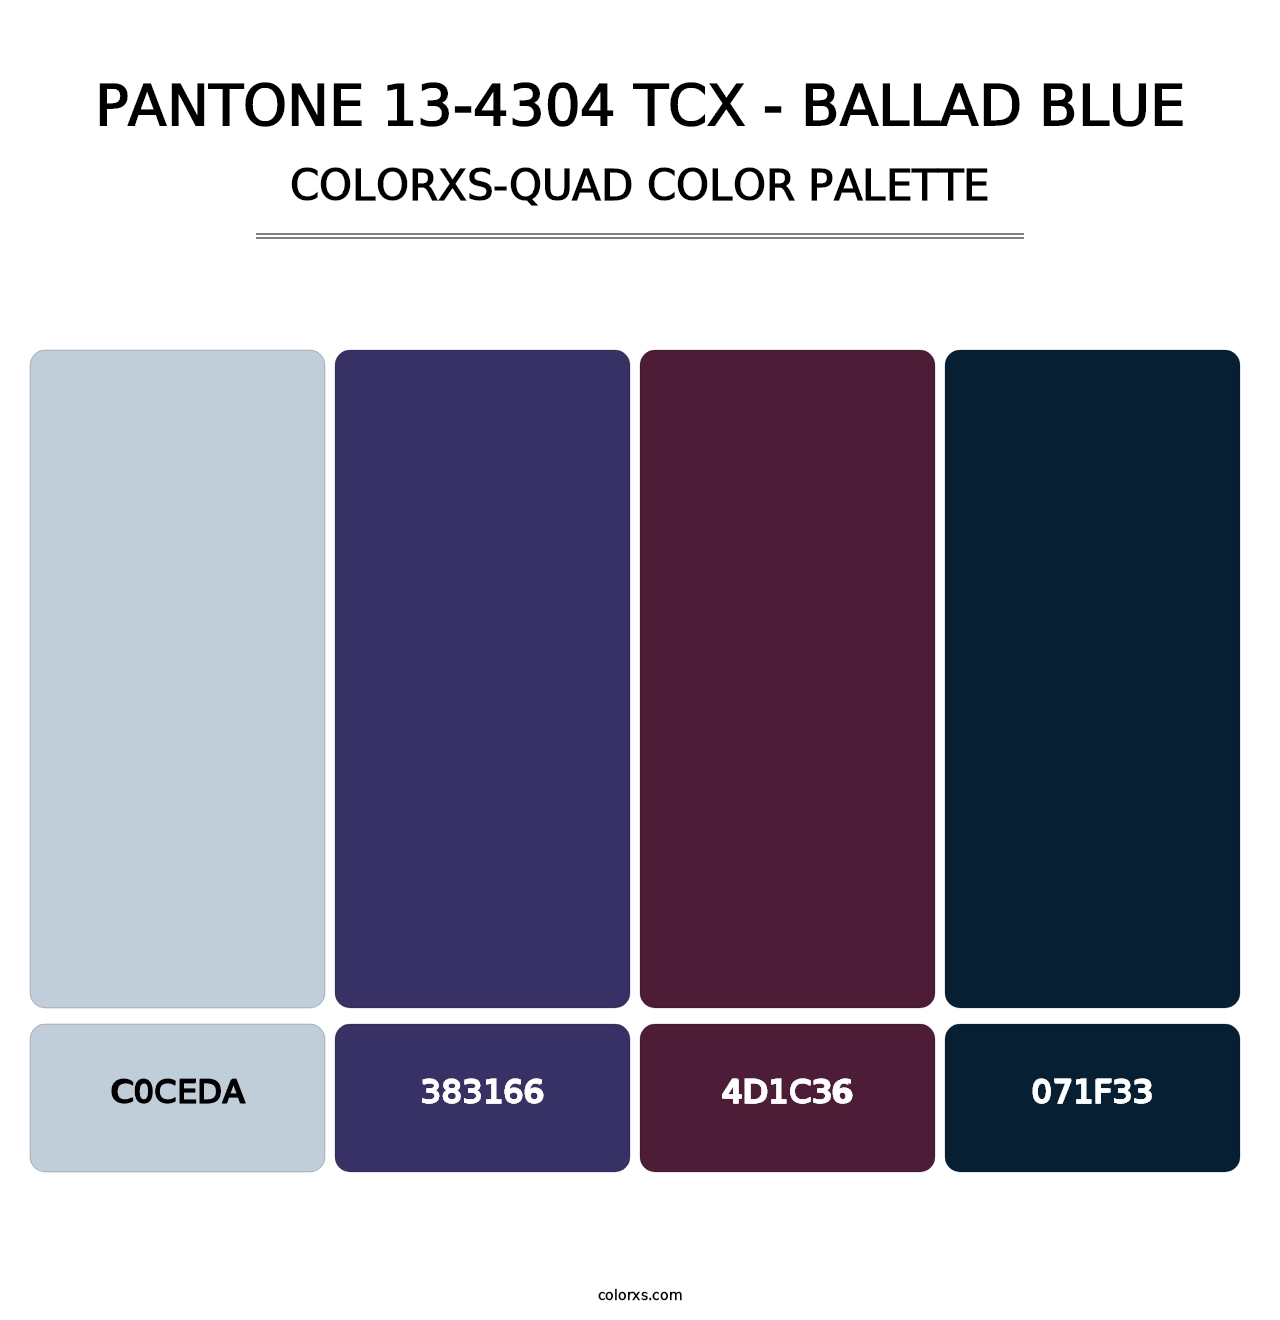 PANTONE 13-4304 TCX - Ballad Blue - Colorxs Quad Palette